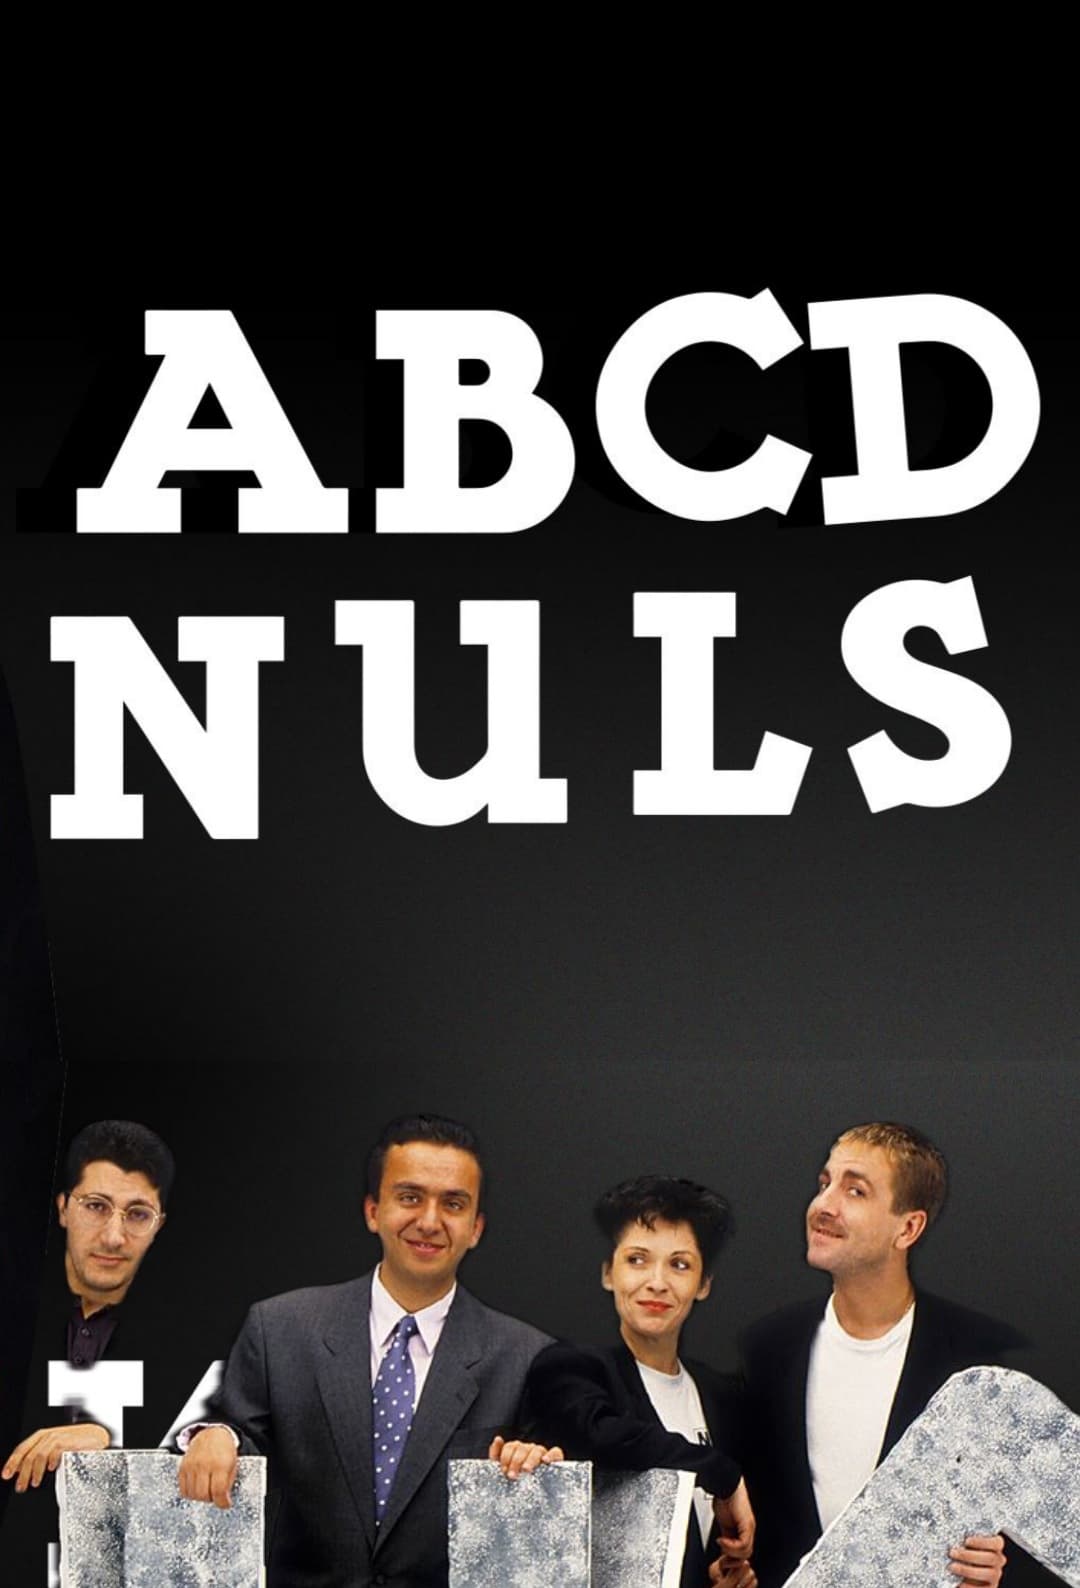 A.B.C.D. Nuls